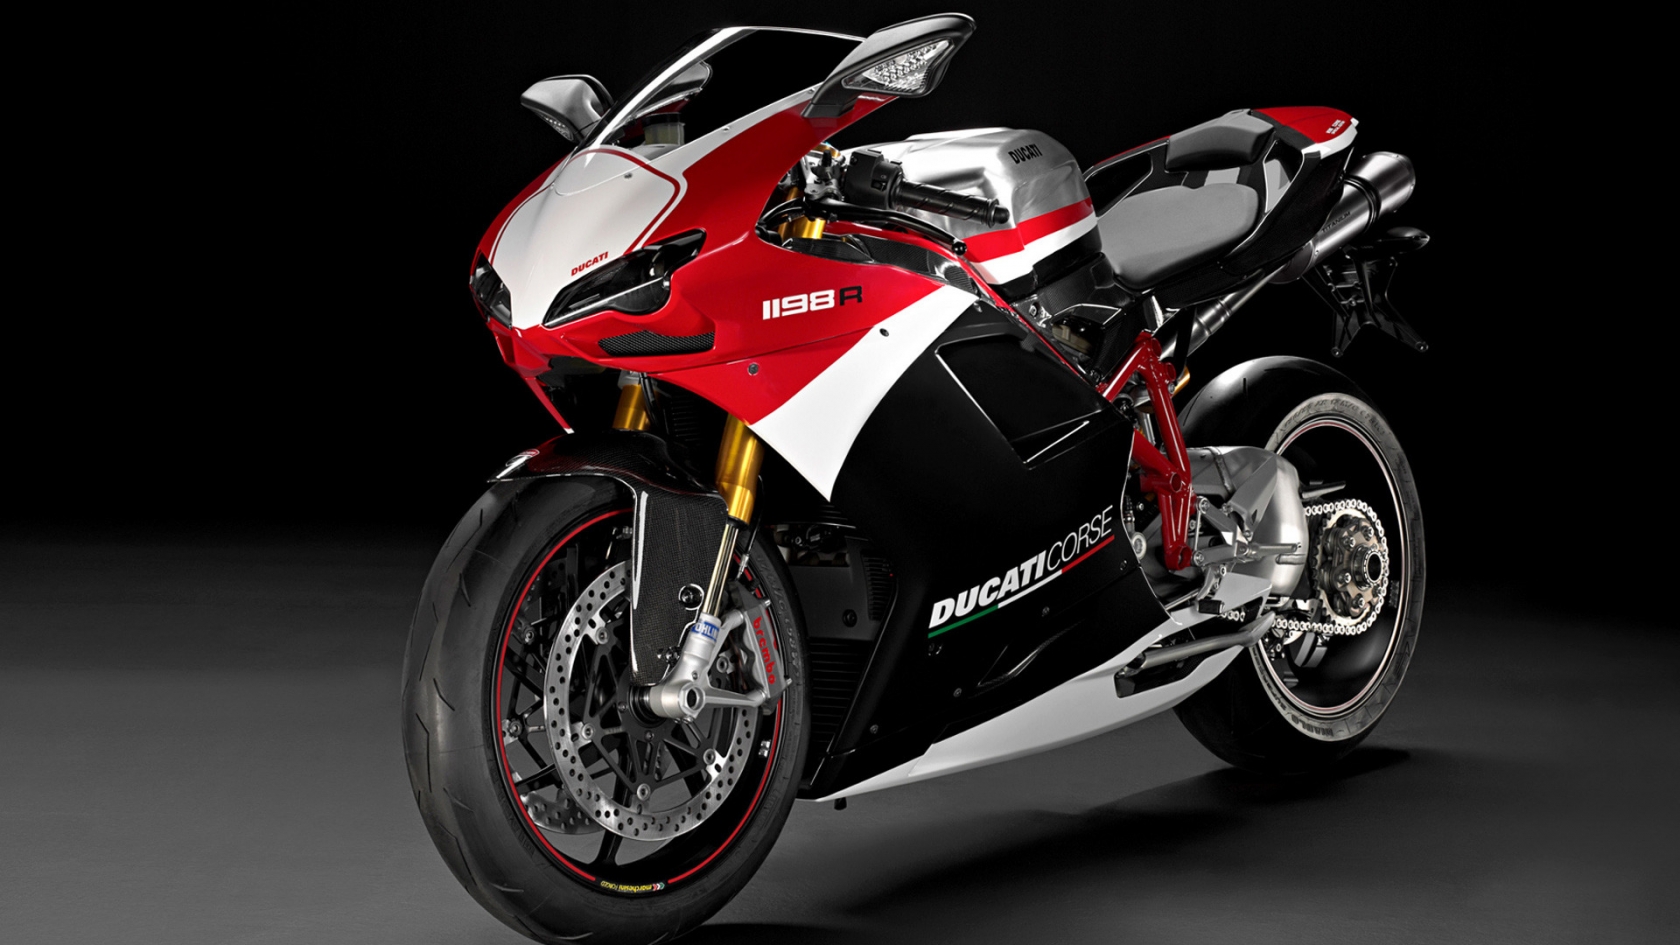 Ducati Superbike-1198-R-Corse for 1680 x 945 HDTV resolution